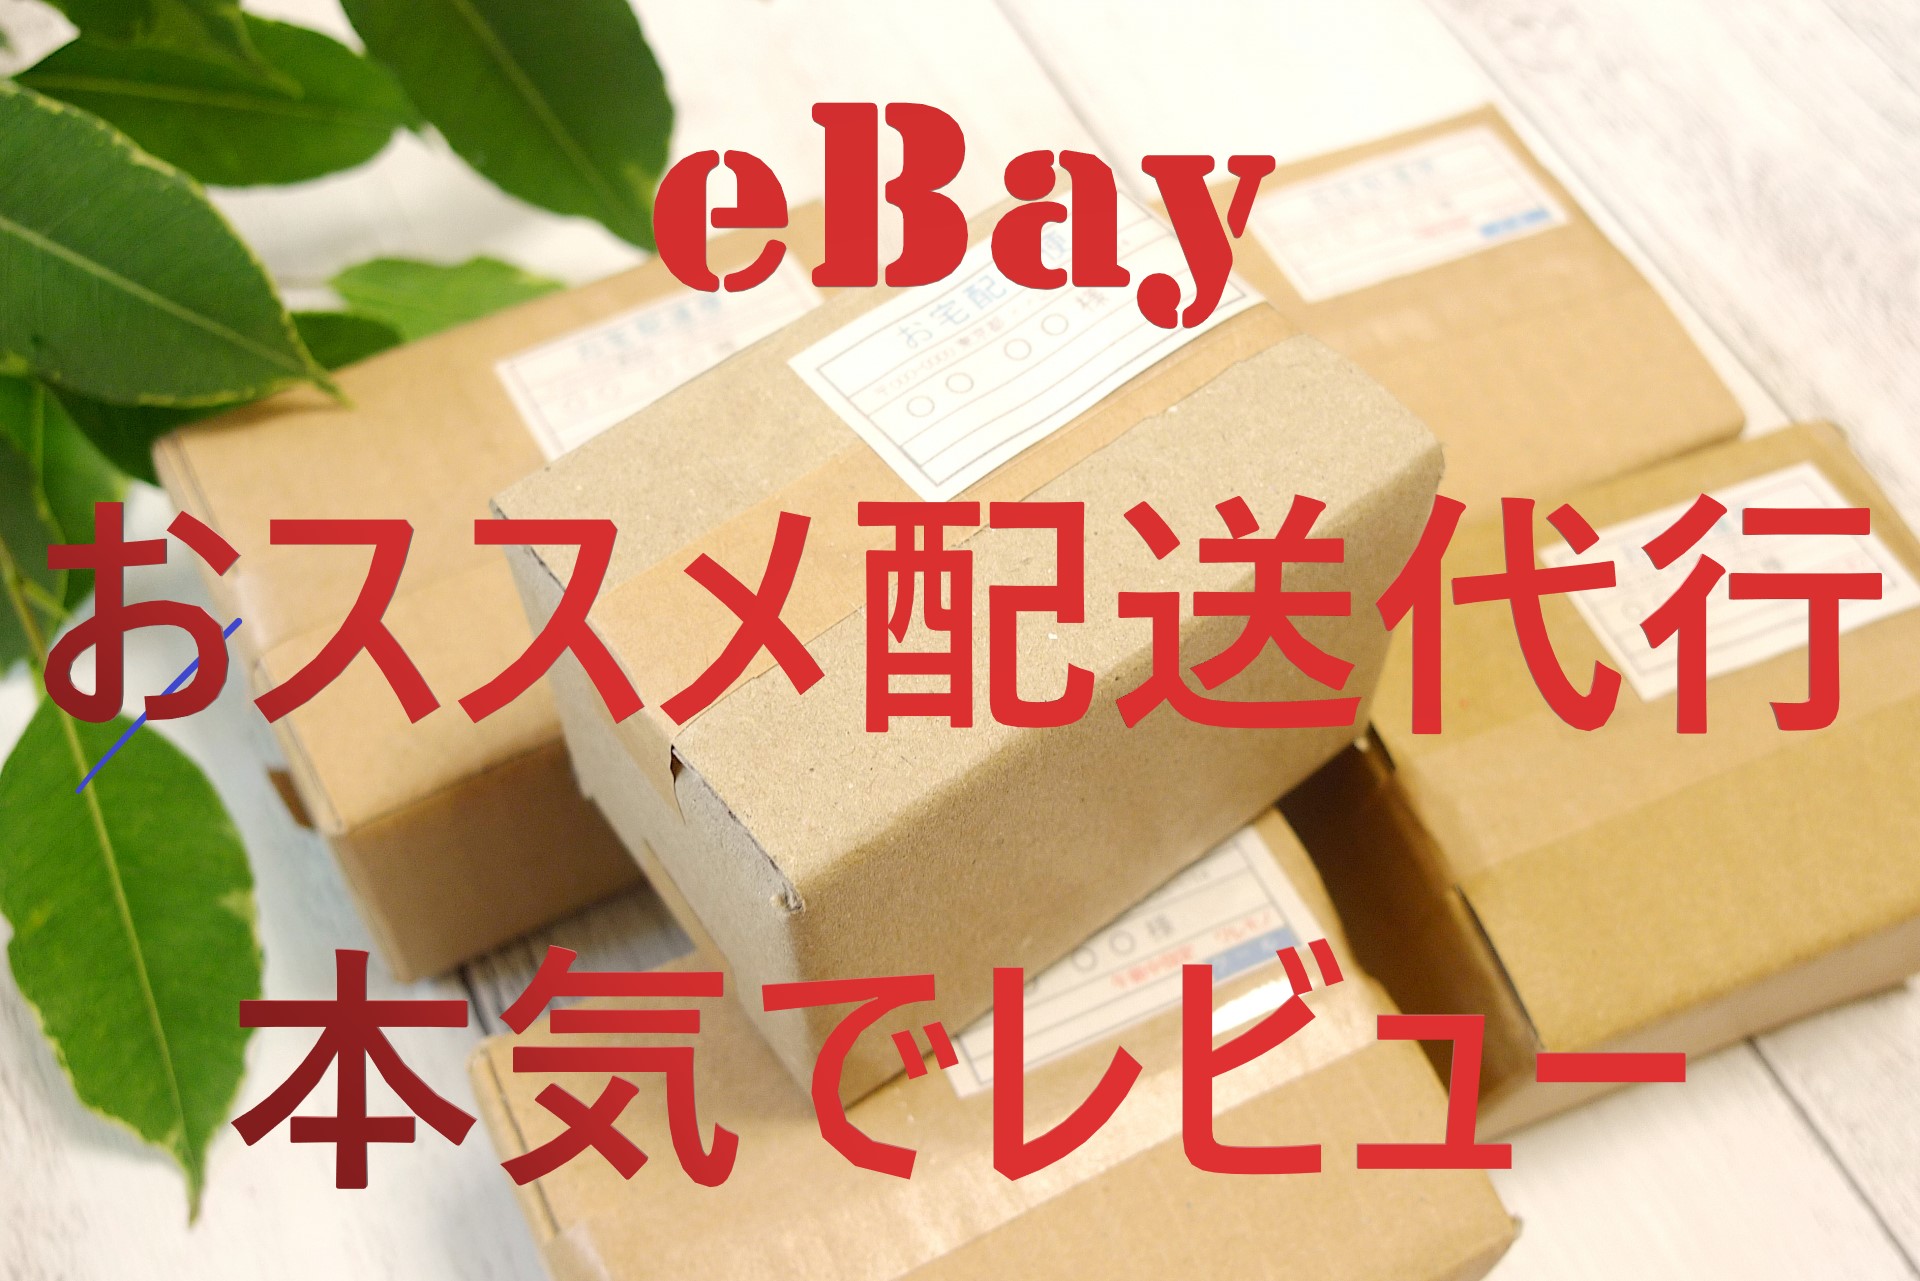 2020年最新 Ebay輸出 で実際に使った発送代行 比較レビュー 副業コンサルぬいぬいのグローバル物販ブログ タイ輸入 Ebay輸出 せどり で月収100万